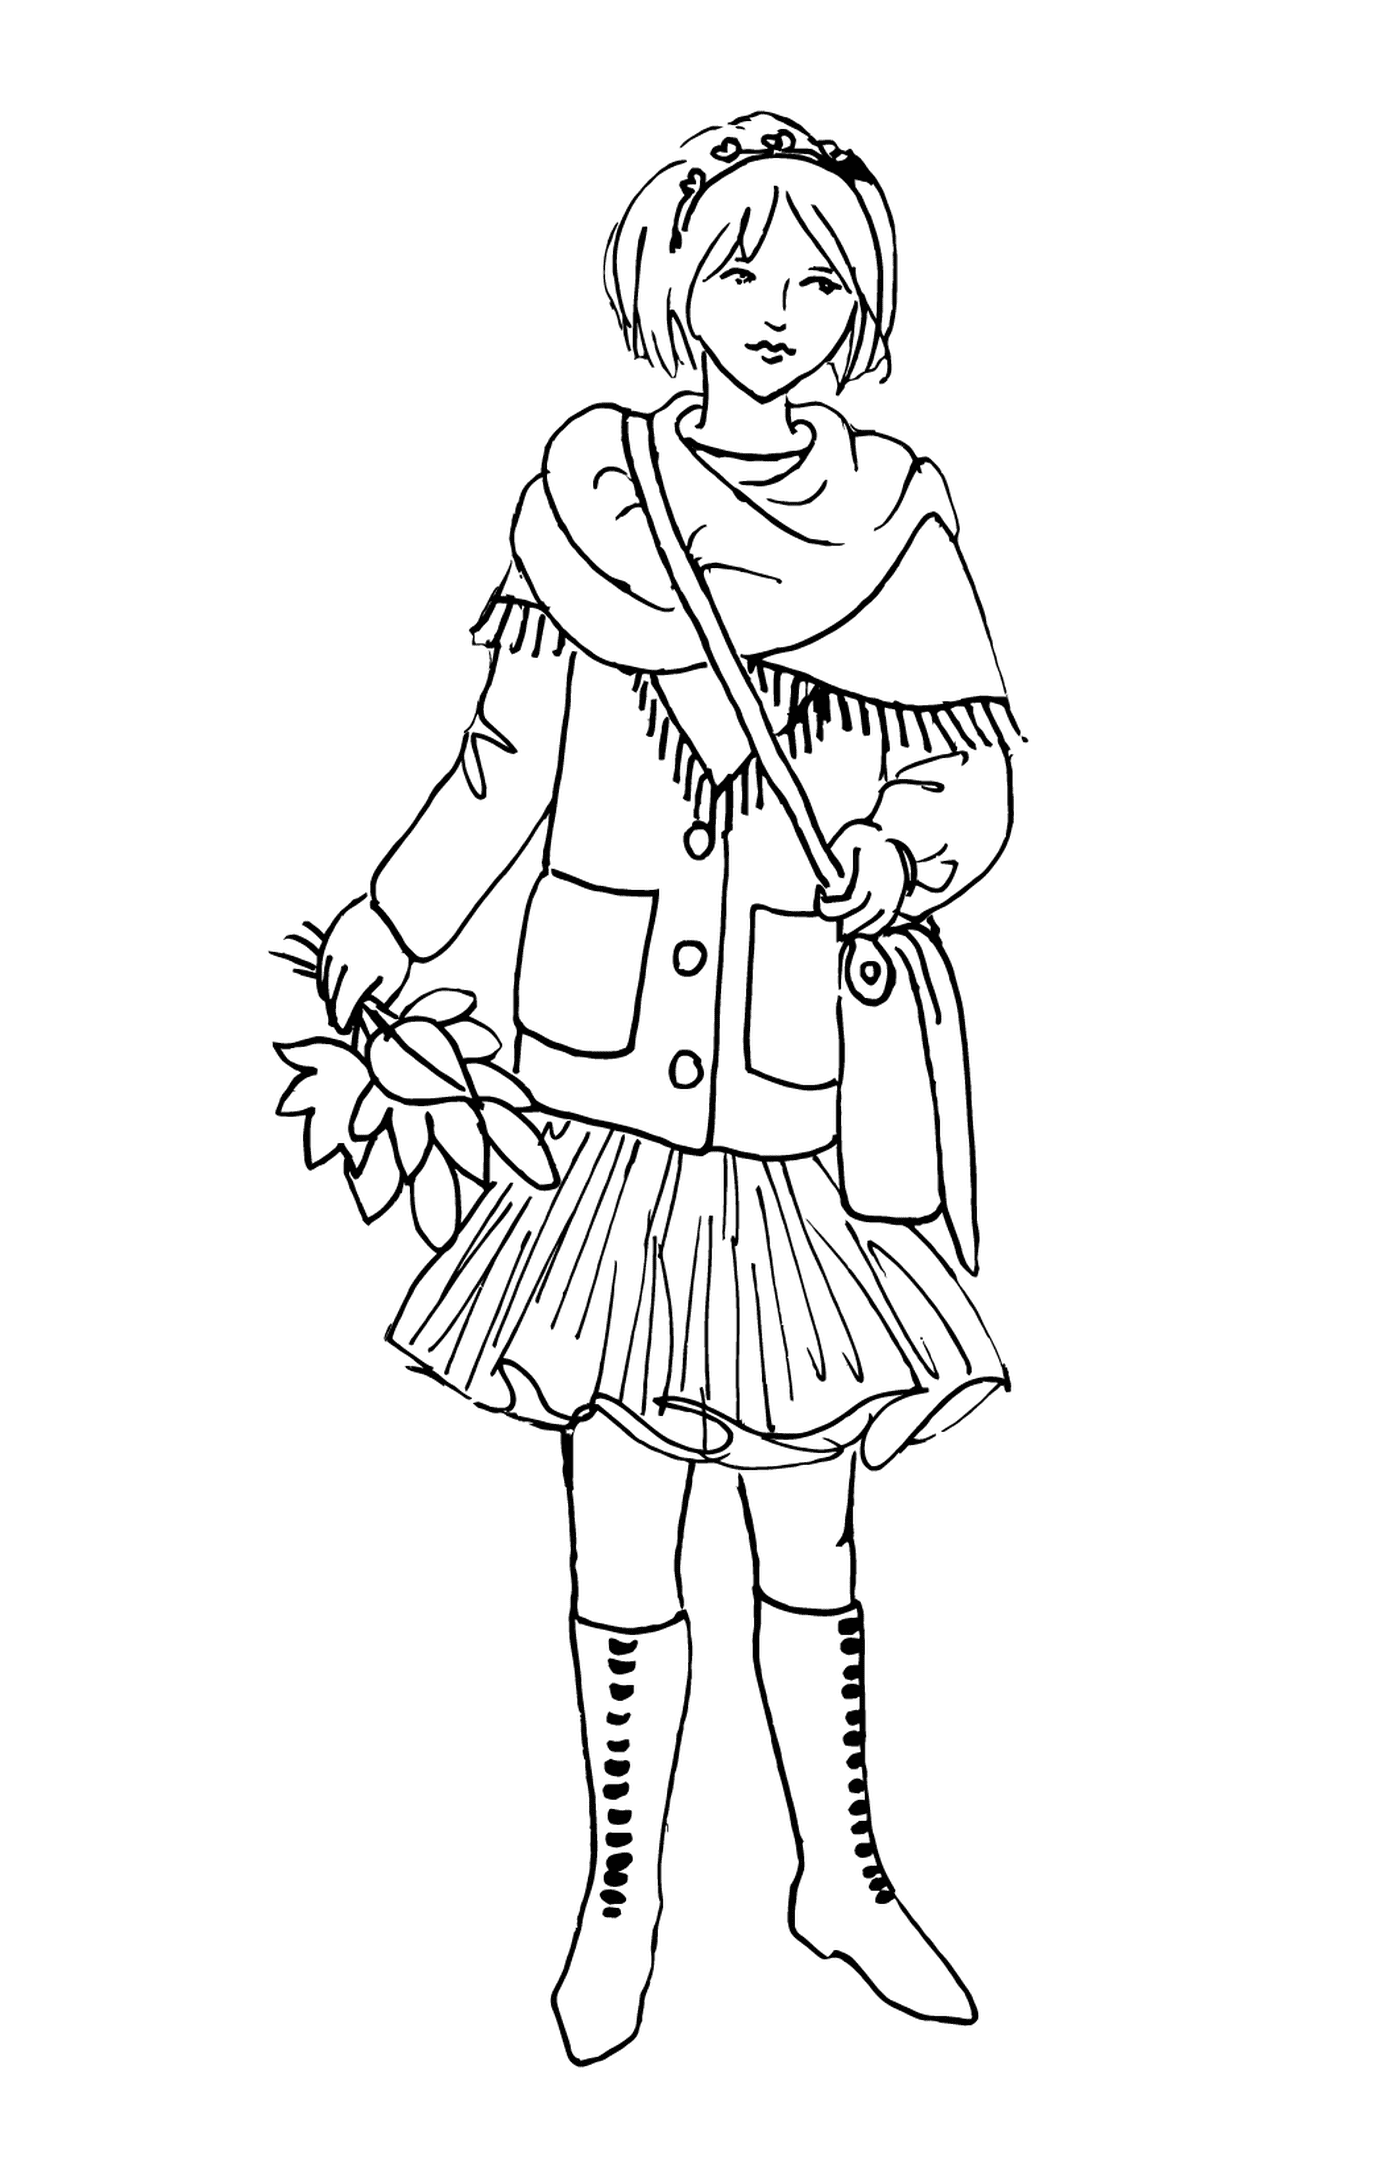  Una ragazza vestita d'inverno 